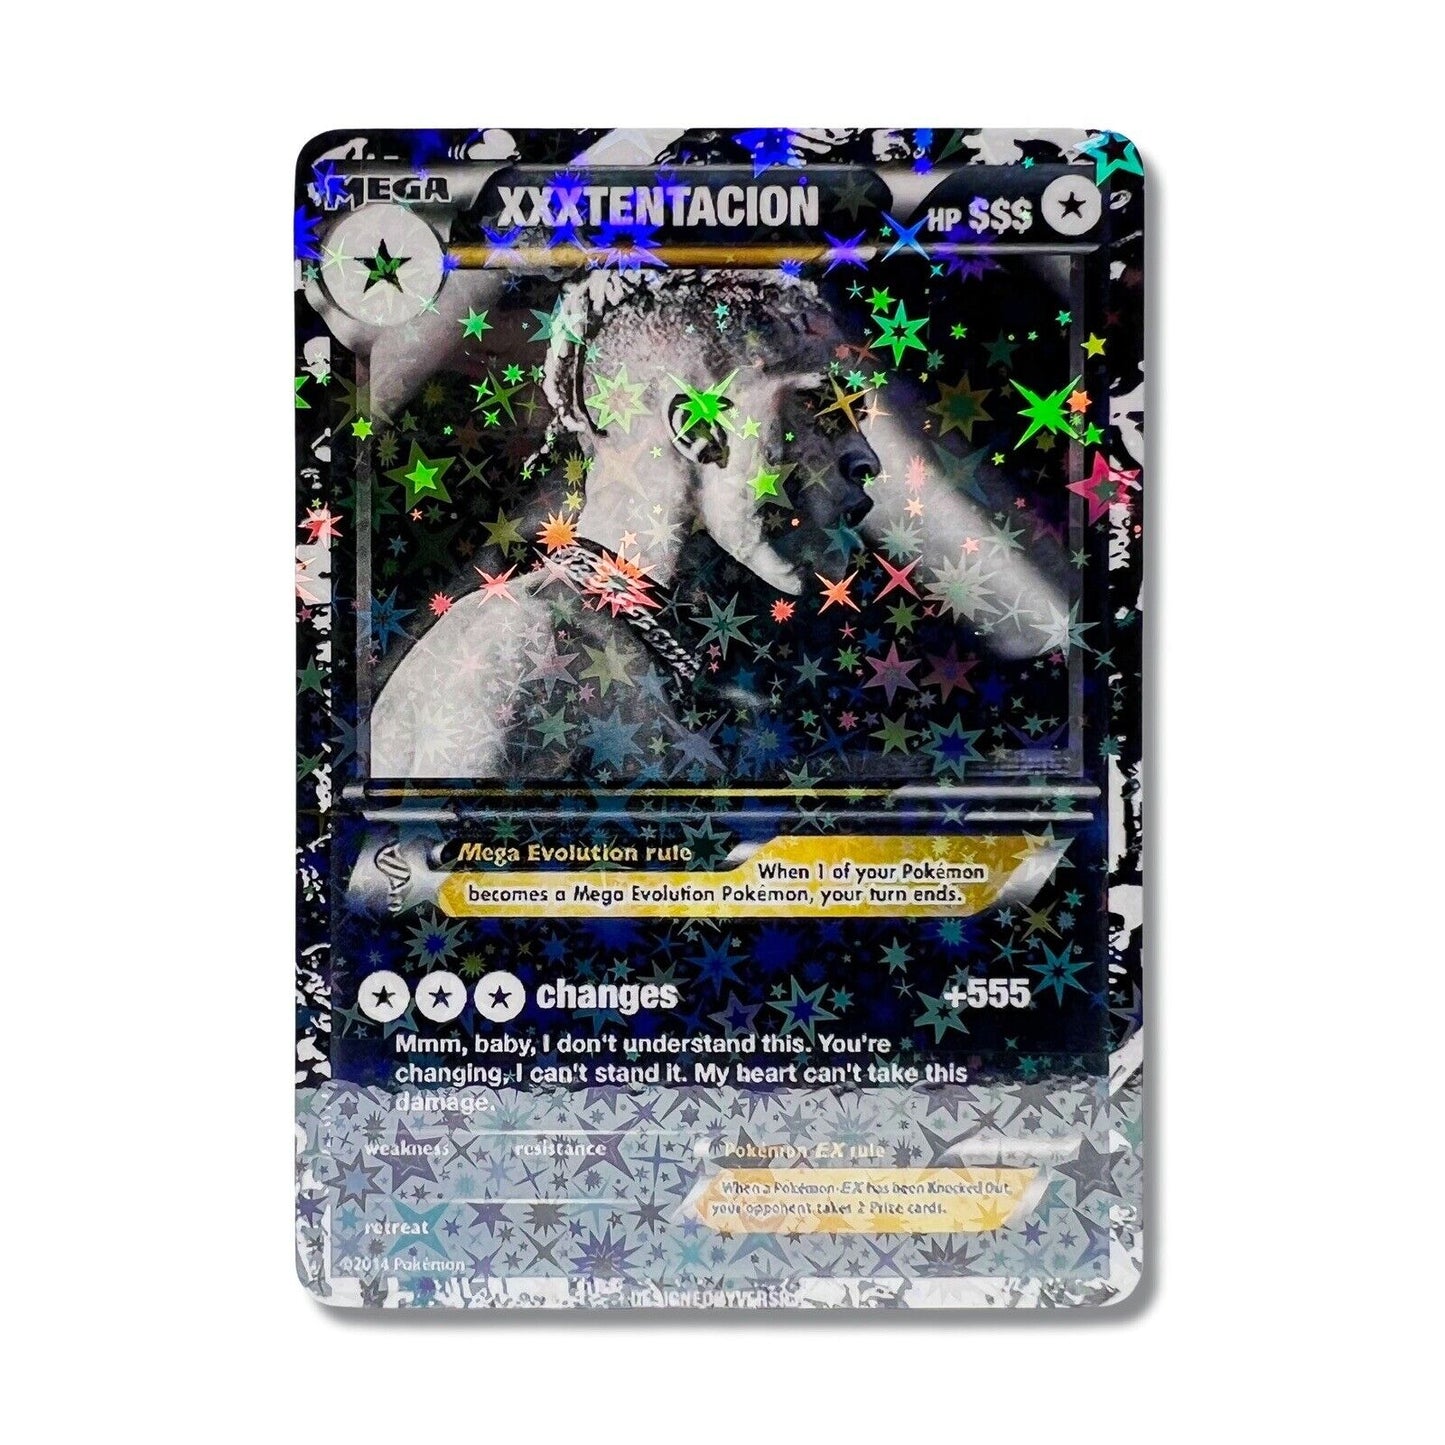 XXXTENTACION Pokémon Card